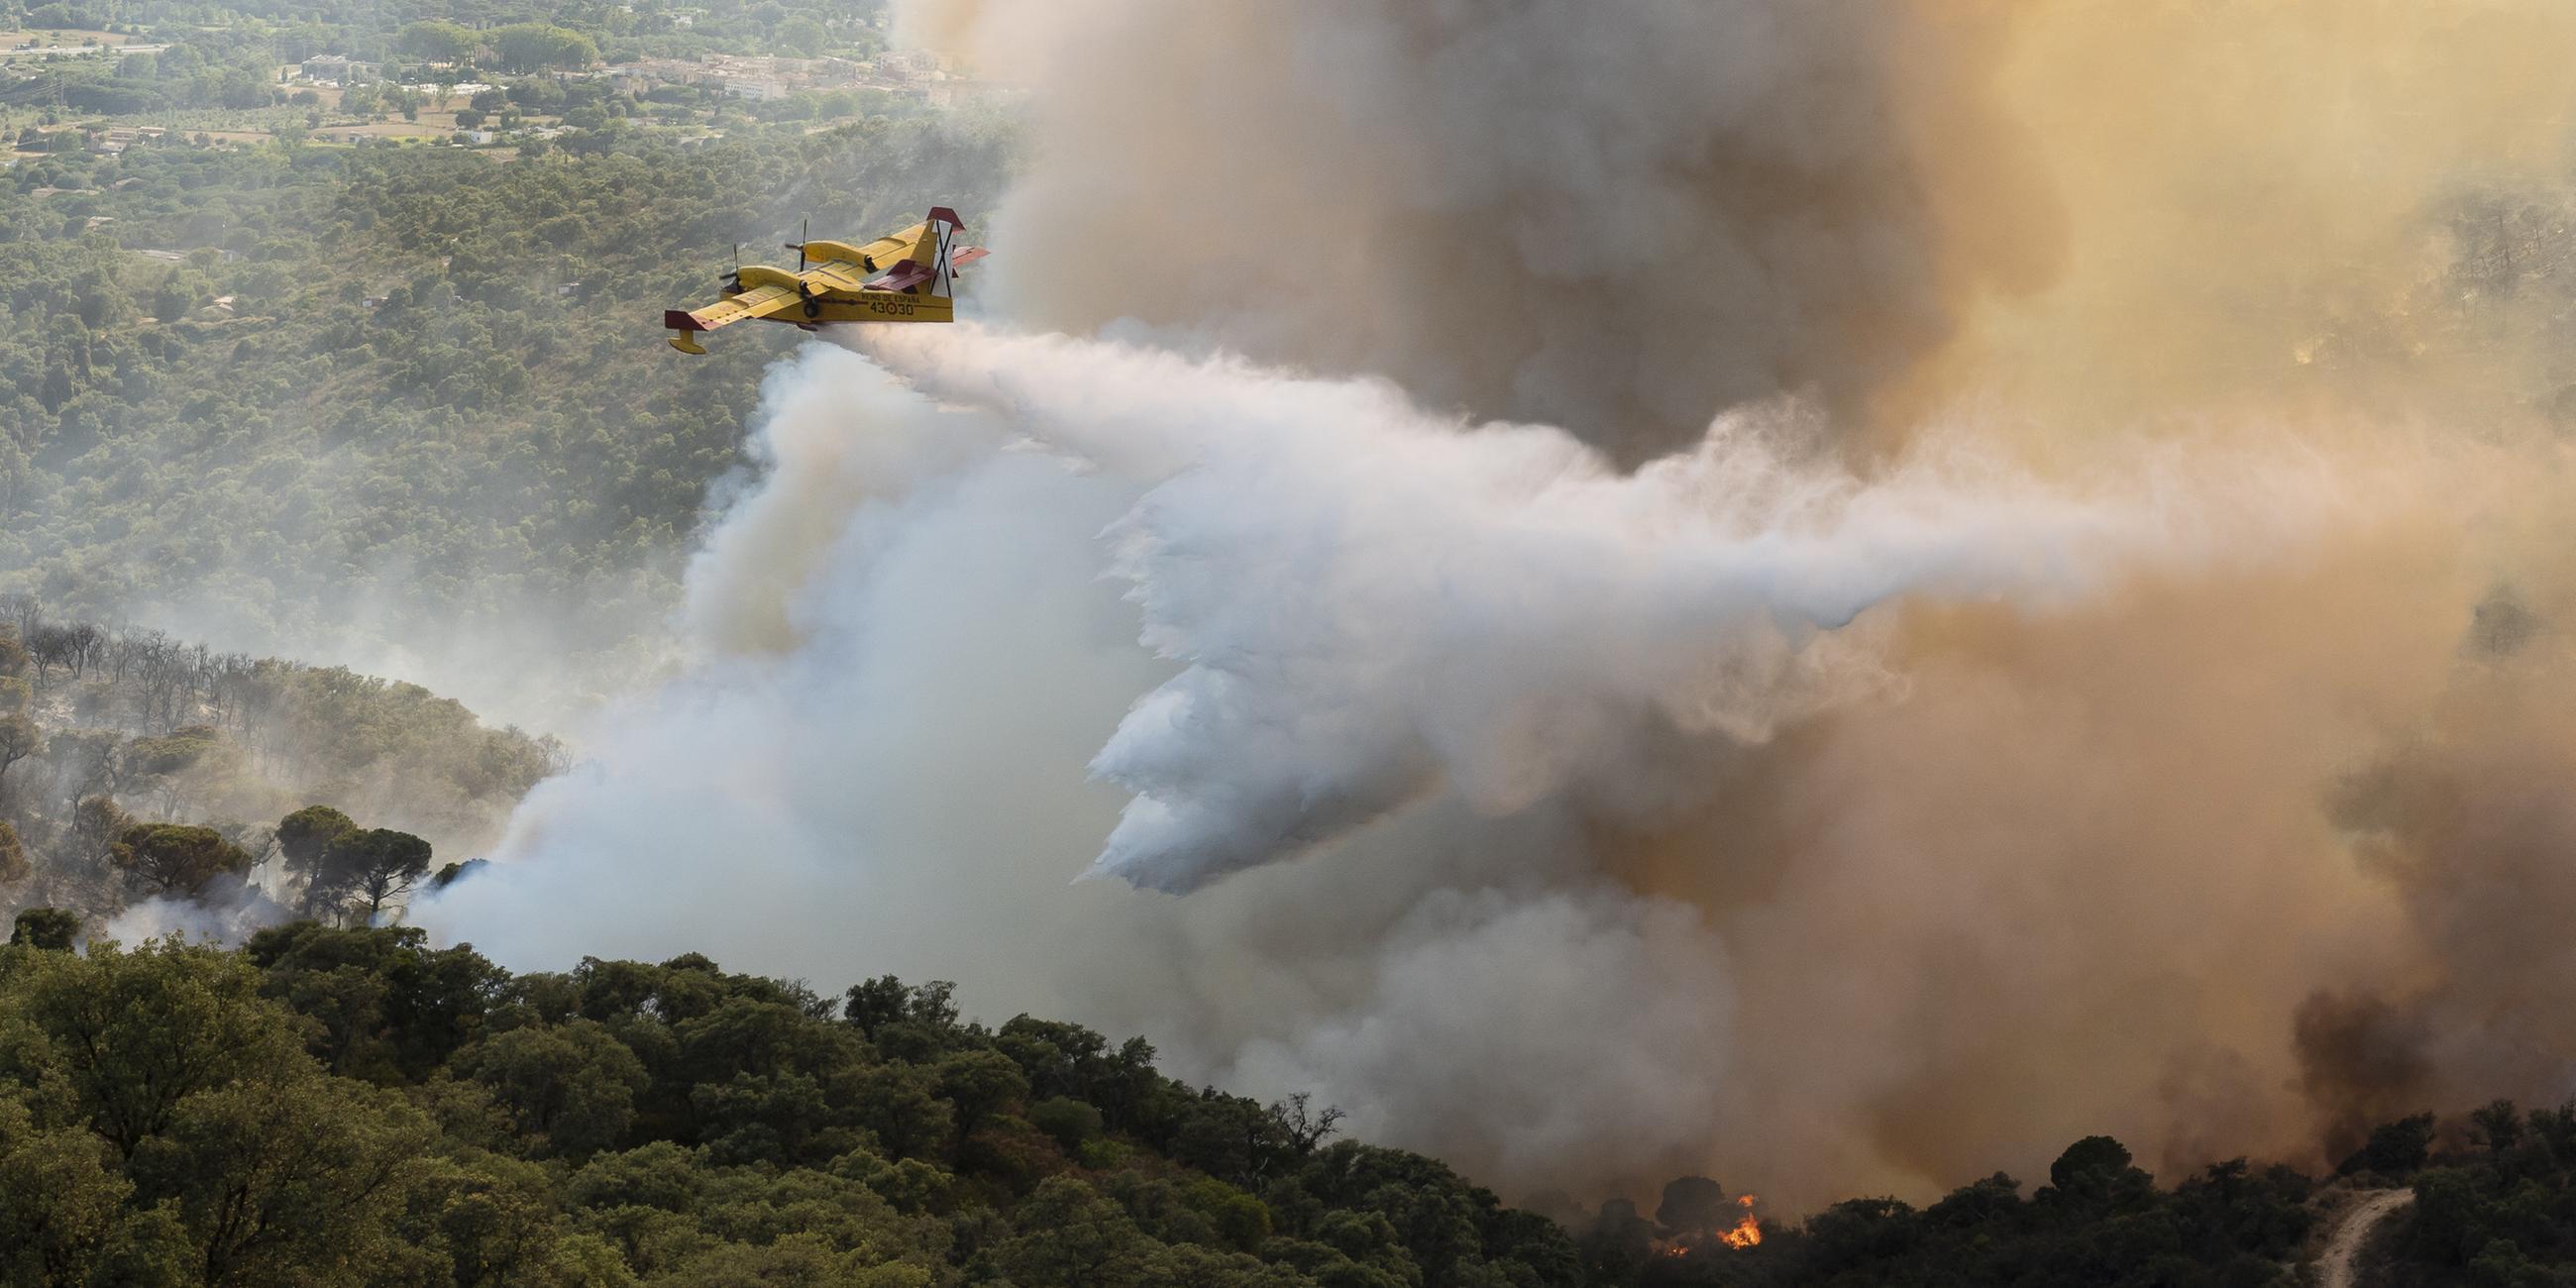 Löschflugzeuge versuchen den Waldbrand zu löschen.